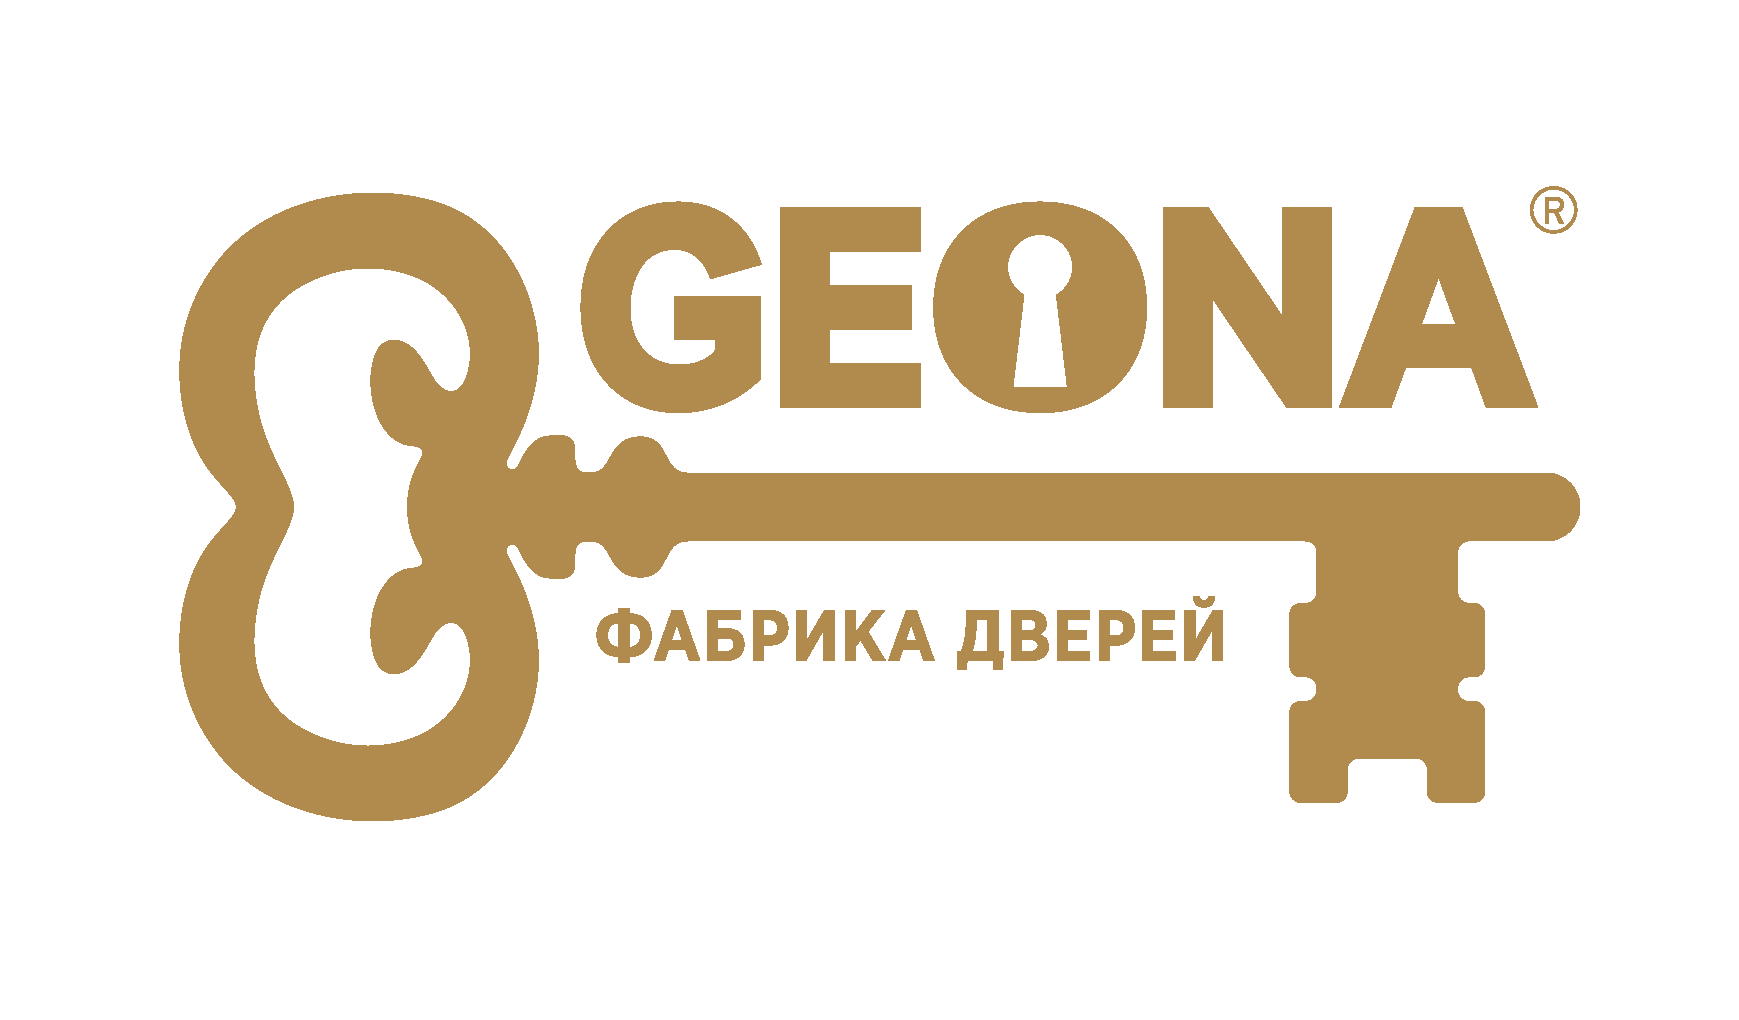 Фирменный салон дверей "Geona"